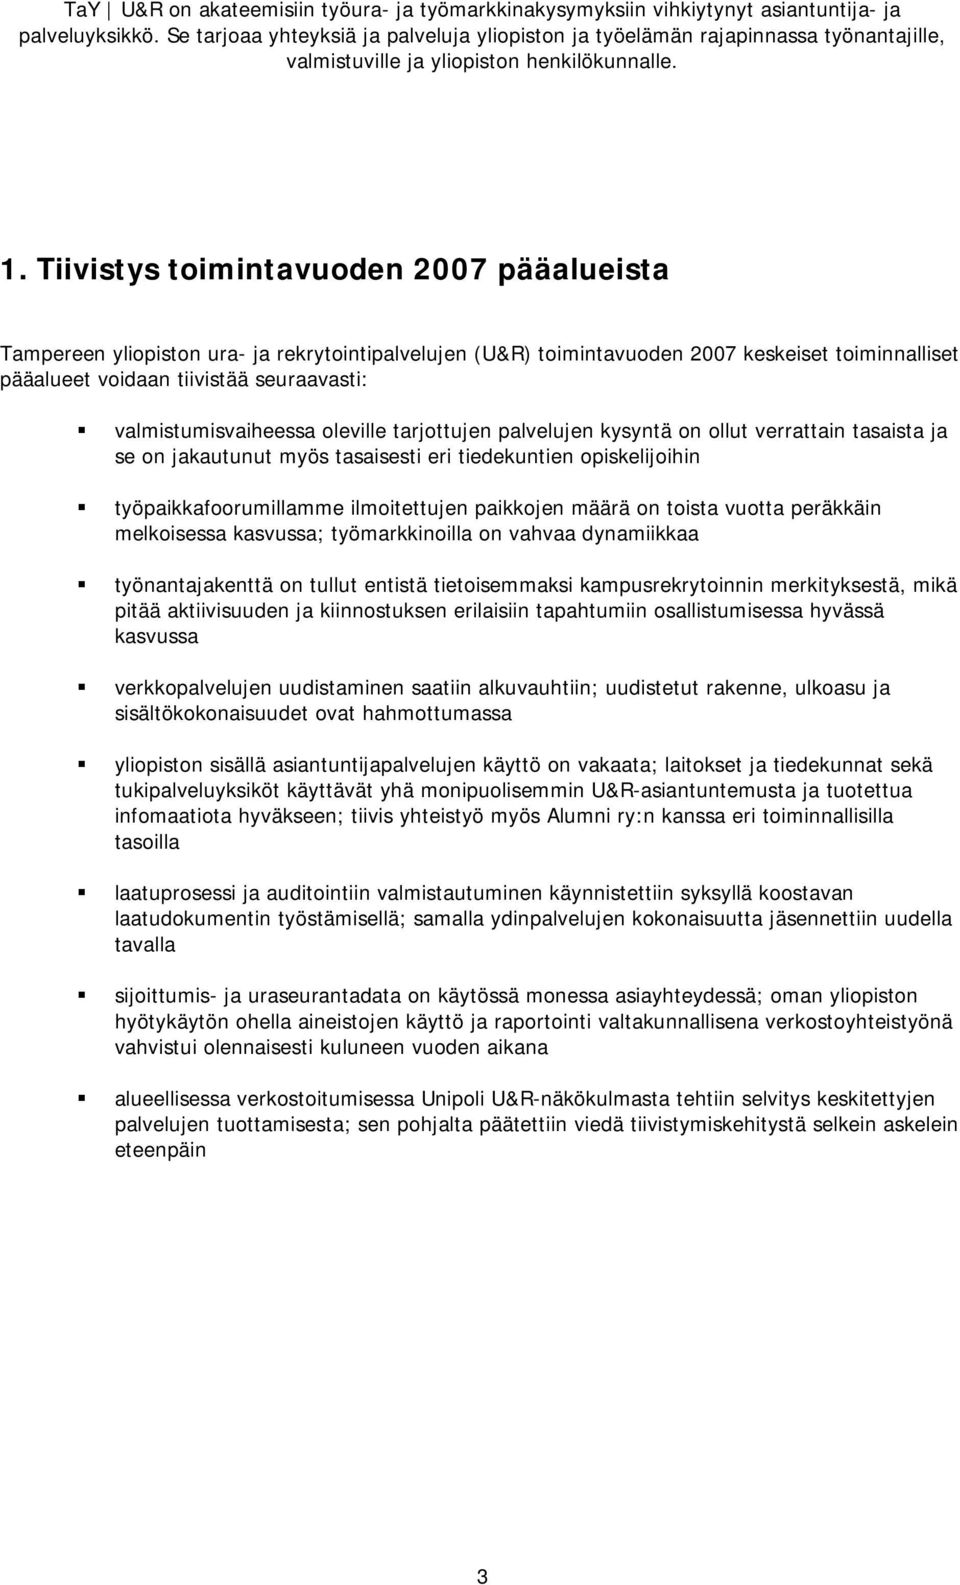 Tiivistys toimintavuoden 2007 pääalueista Tampereen yliopiston ura- ja rekrytointipalvelujen (U&R) toimintavuoden 2007 keskeiset toiminnalliset pääalueet voidaan tiivistää seuraavasti: